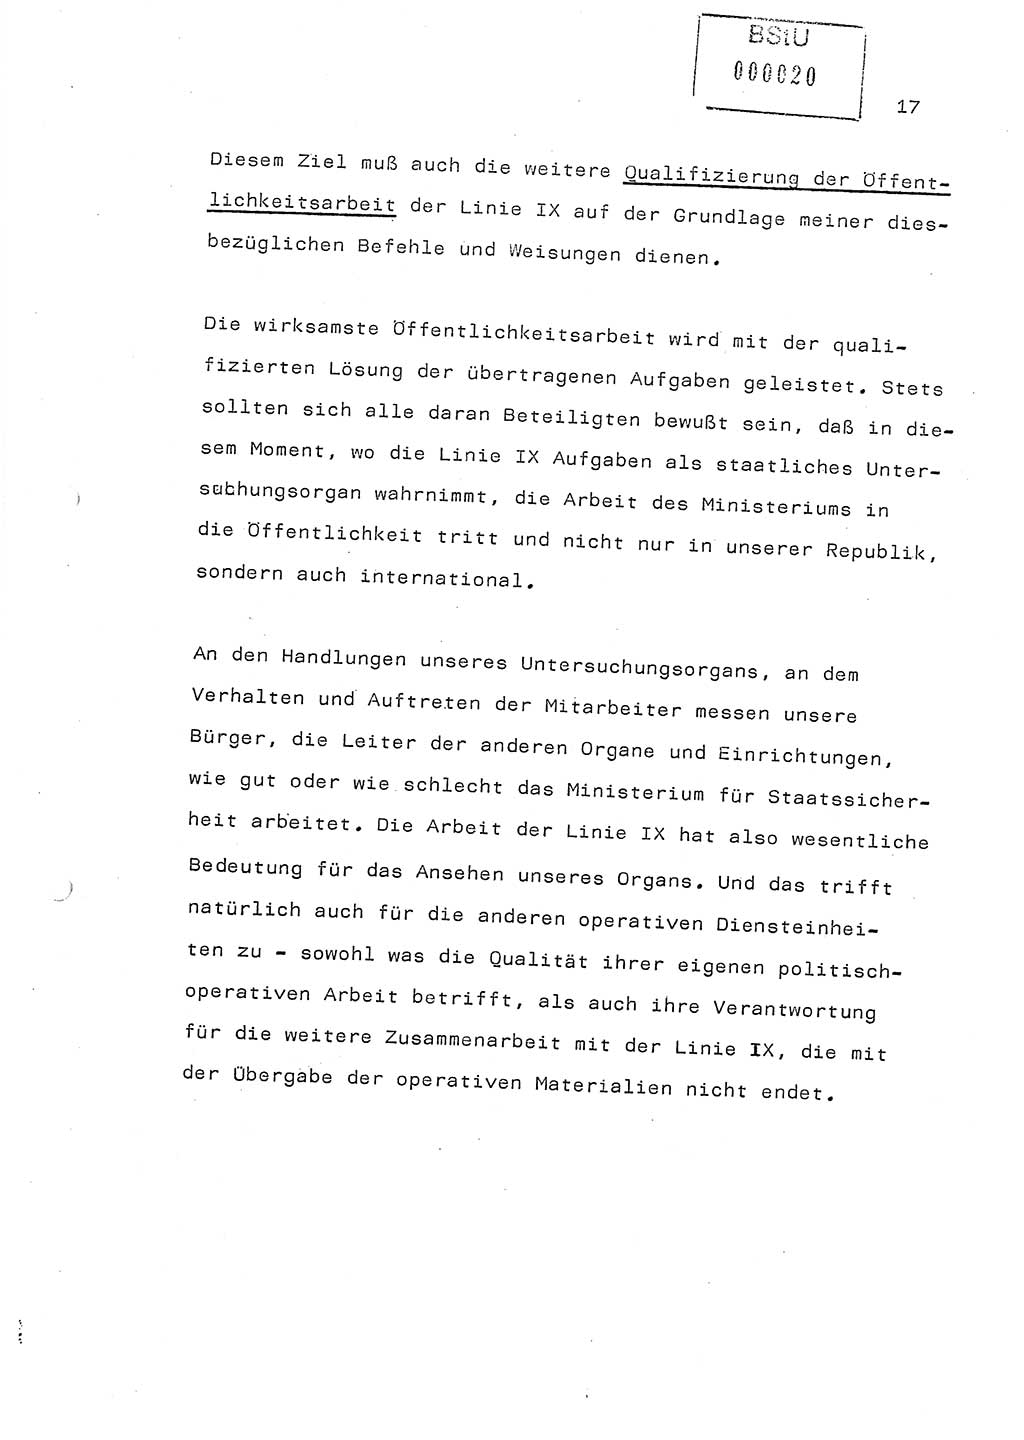 Referat (Generaloberst Erich Mielke) auf der Zentralen Dienstkonferenz am 24.5.1979 [Ministerium für Staatssicherheit (MfS), Deutsche Demokratische Republik (DDR), Der Minister], Berlin 1979, Seite 17 (Ref. DK DDR MfS Min. /79 1979, S. 17)